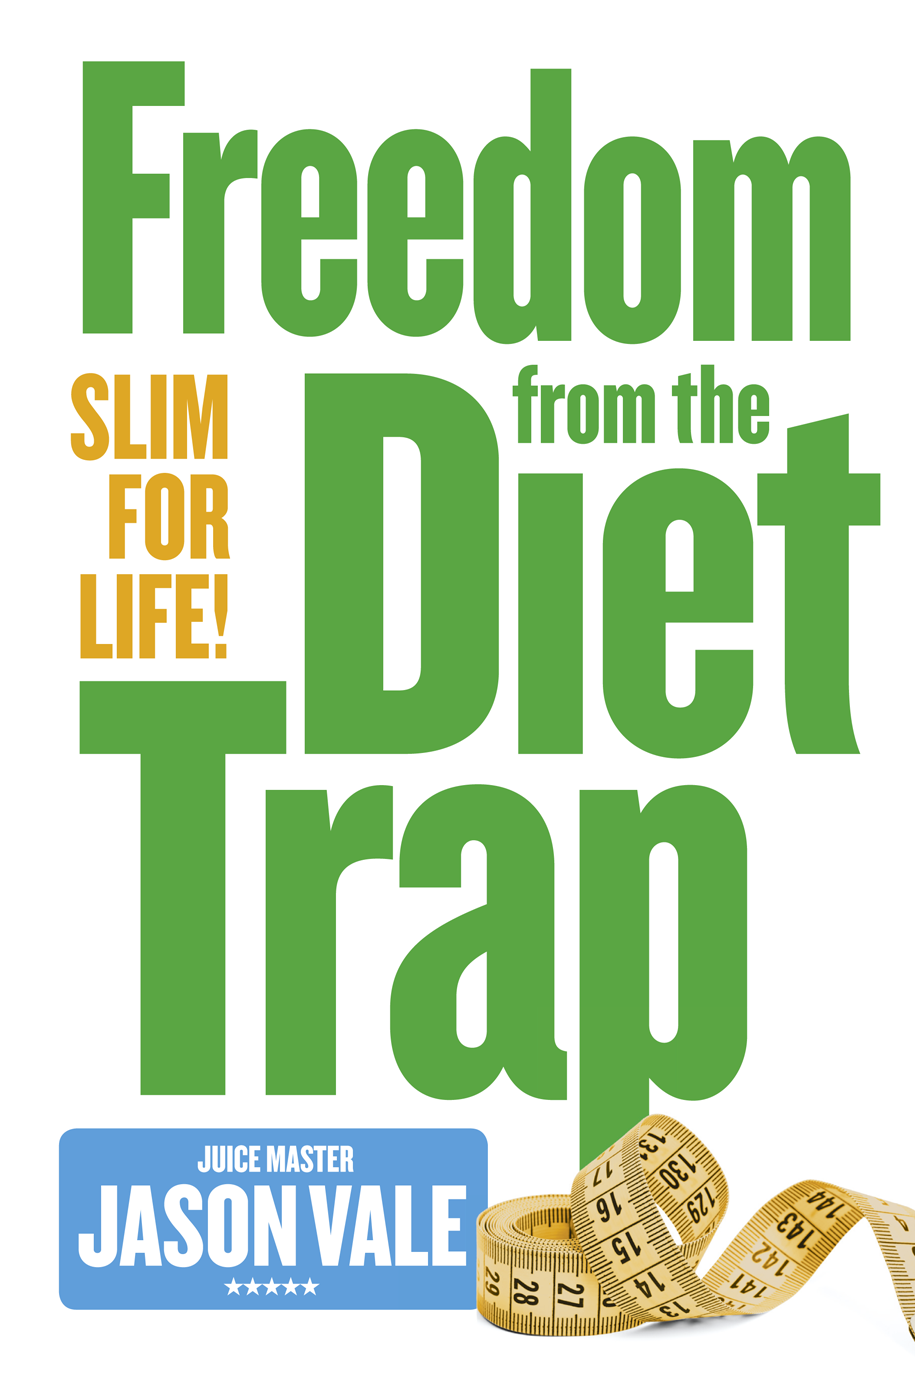 Книга Freedom from the Diet Trap: Slim for Life из серии , созданная Jason Vale, может относится к жанру Кулинария, Здоровье, Спорт, фитнес. Стоимость электронной книги Freedom from the Diet Trap: Slim for Life с идентификатором 39765361 составляет 783.37 руб.